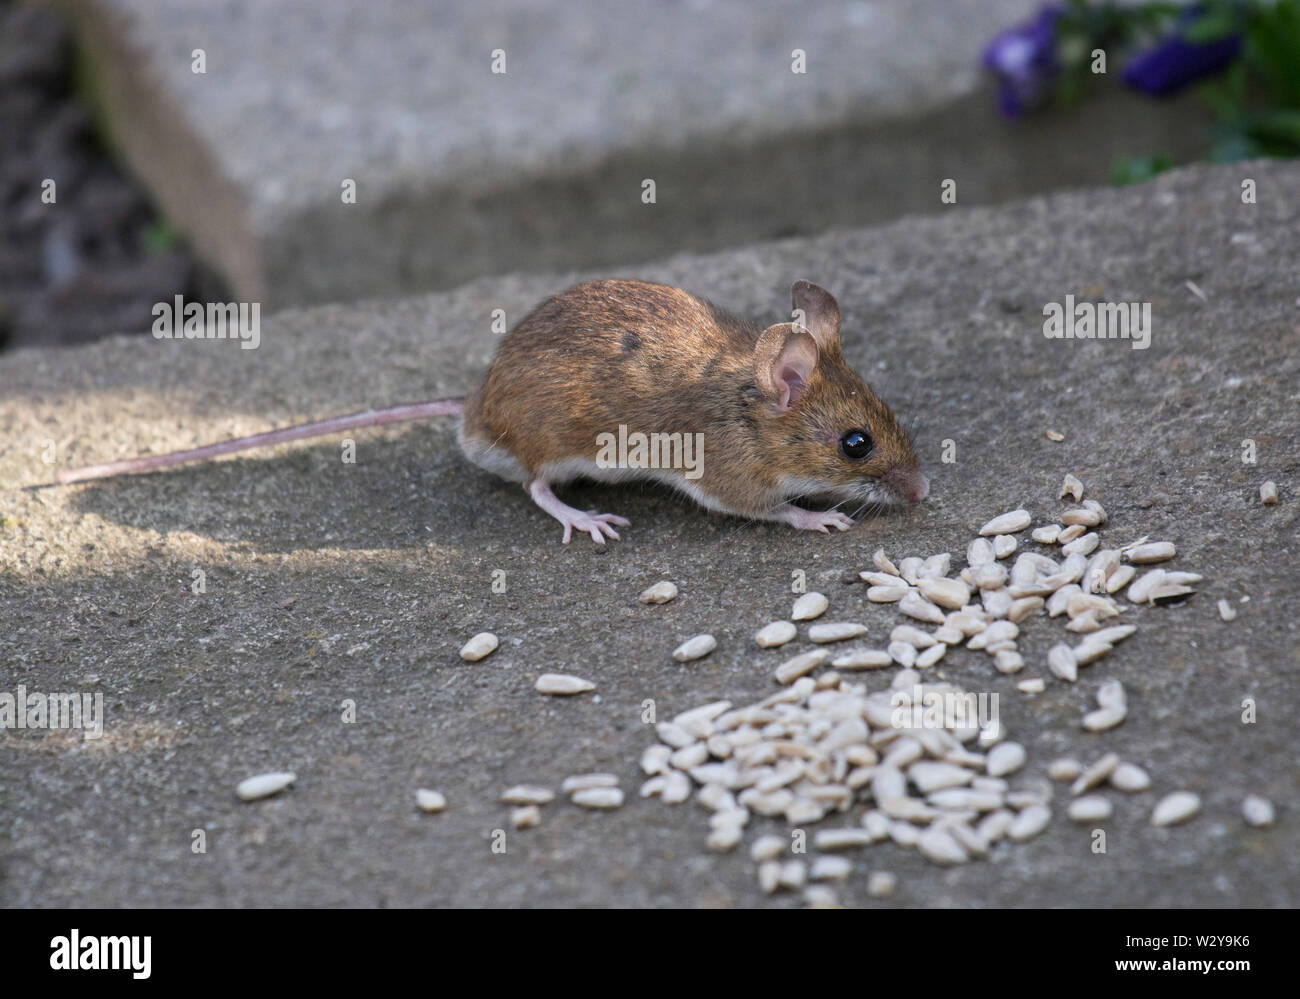 Mouse di legno, Apodemus sylvaticus, mangiare semi, Lancashire, Regno Unito Foto Stock